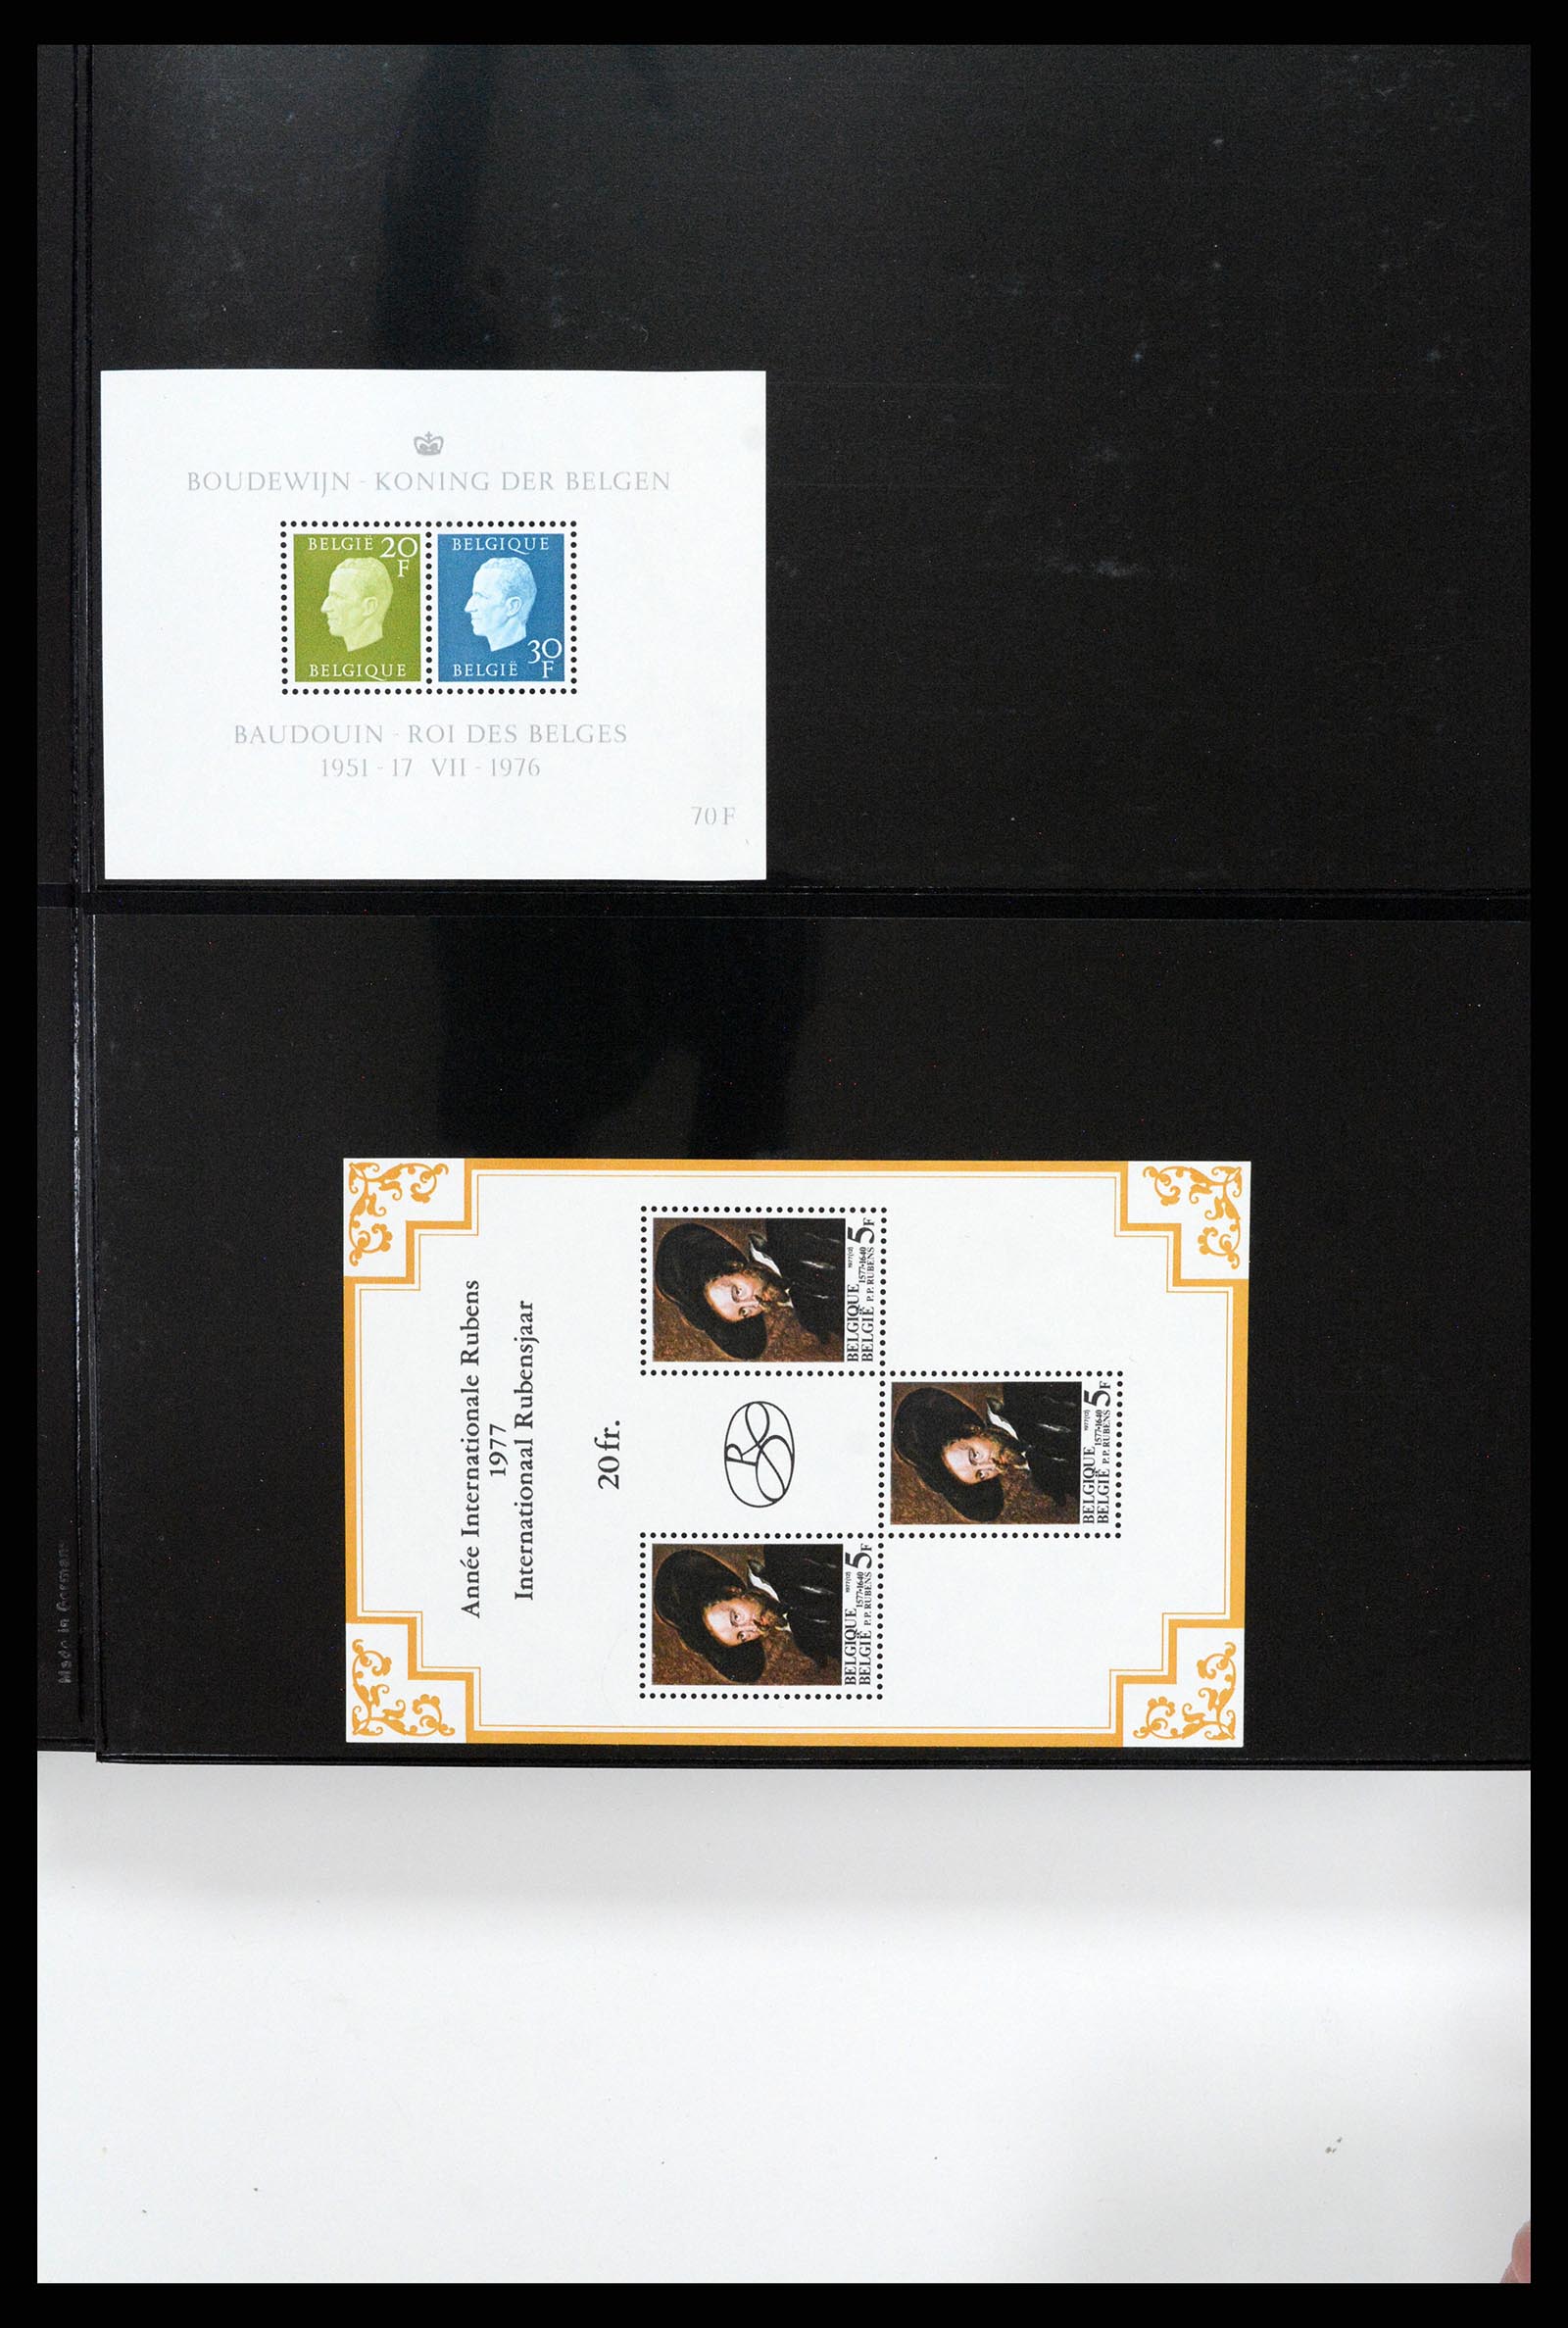 37345 007 - Stamp collection 37345 European countries souvenir sheets.